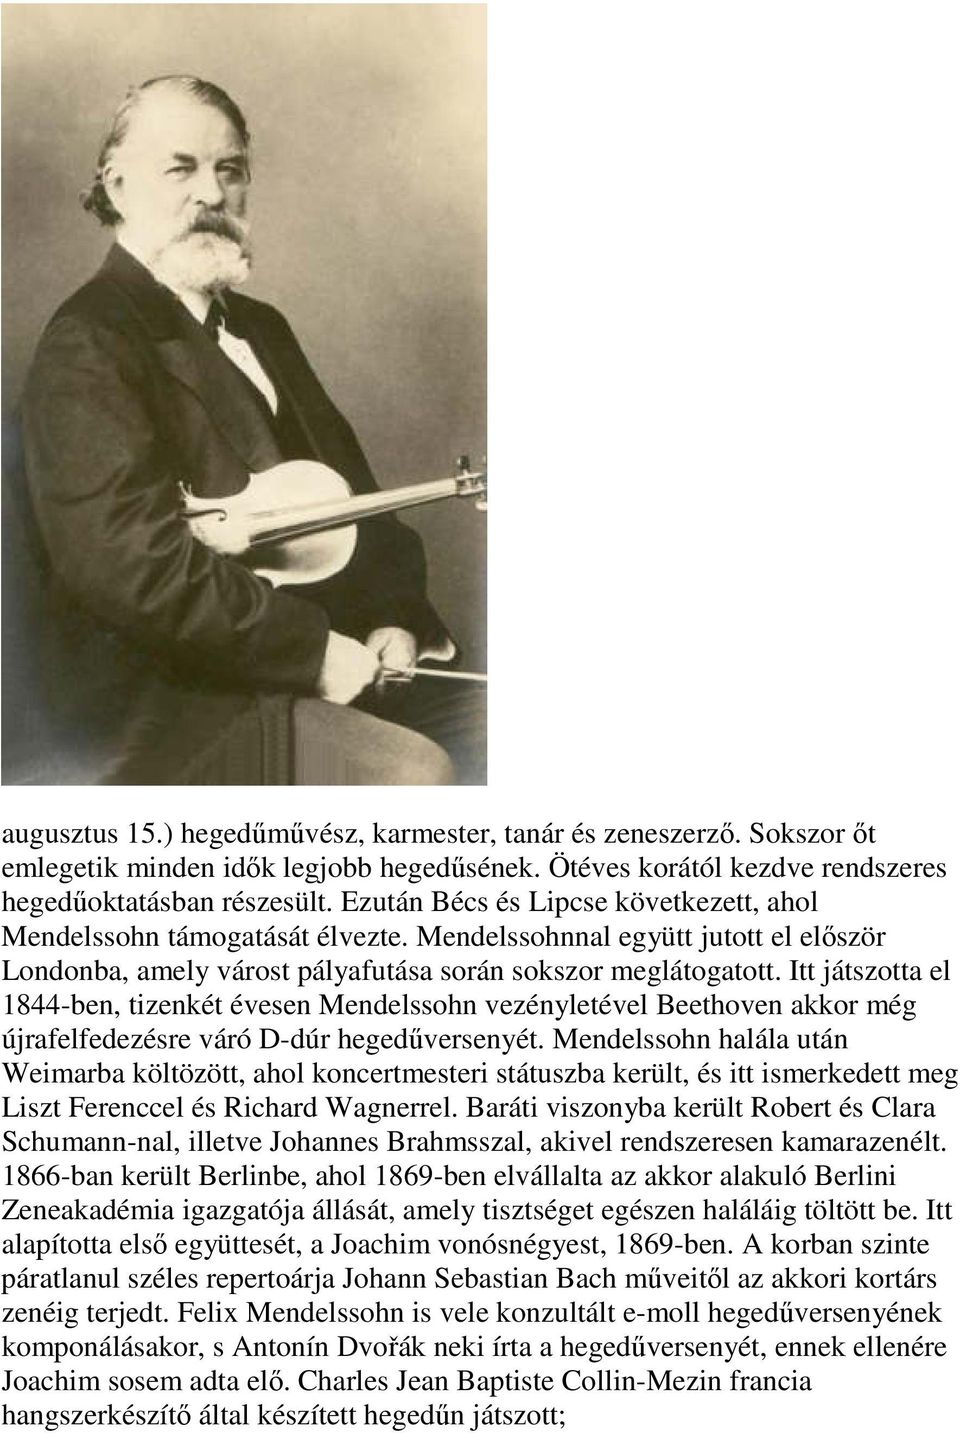 Itt játszotta el 1844-ben, tizenkét évesen Mendelssohn vezényletével Beethoven akkor még újrafelfedezésre váró D-dúr hegedűversenyét.